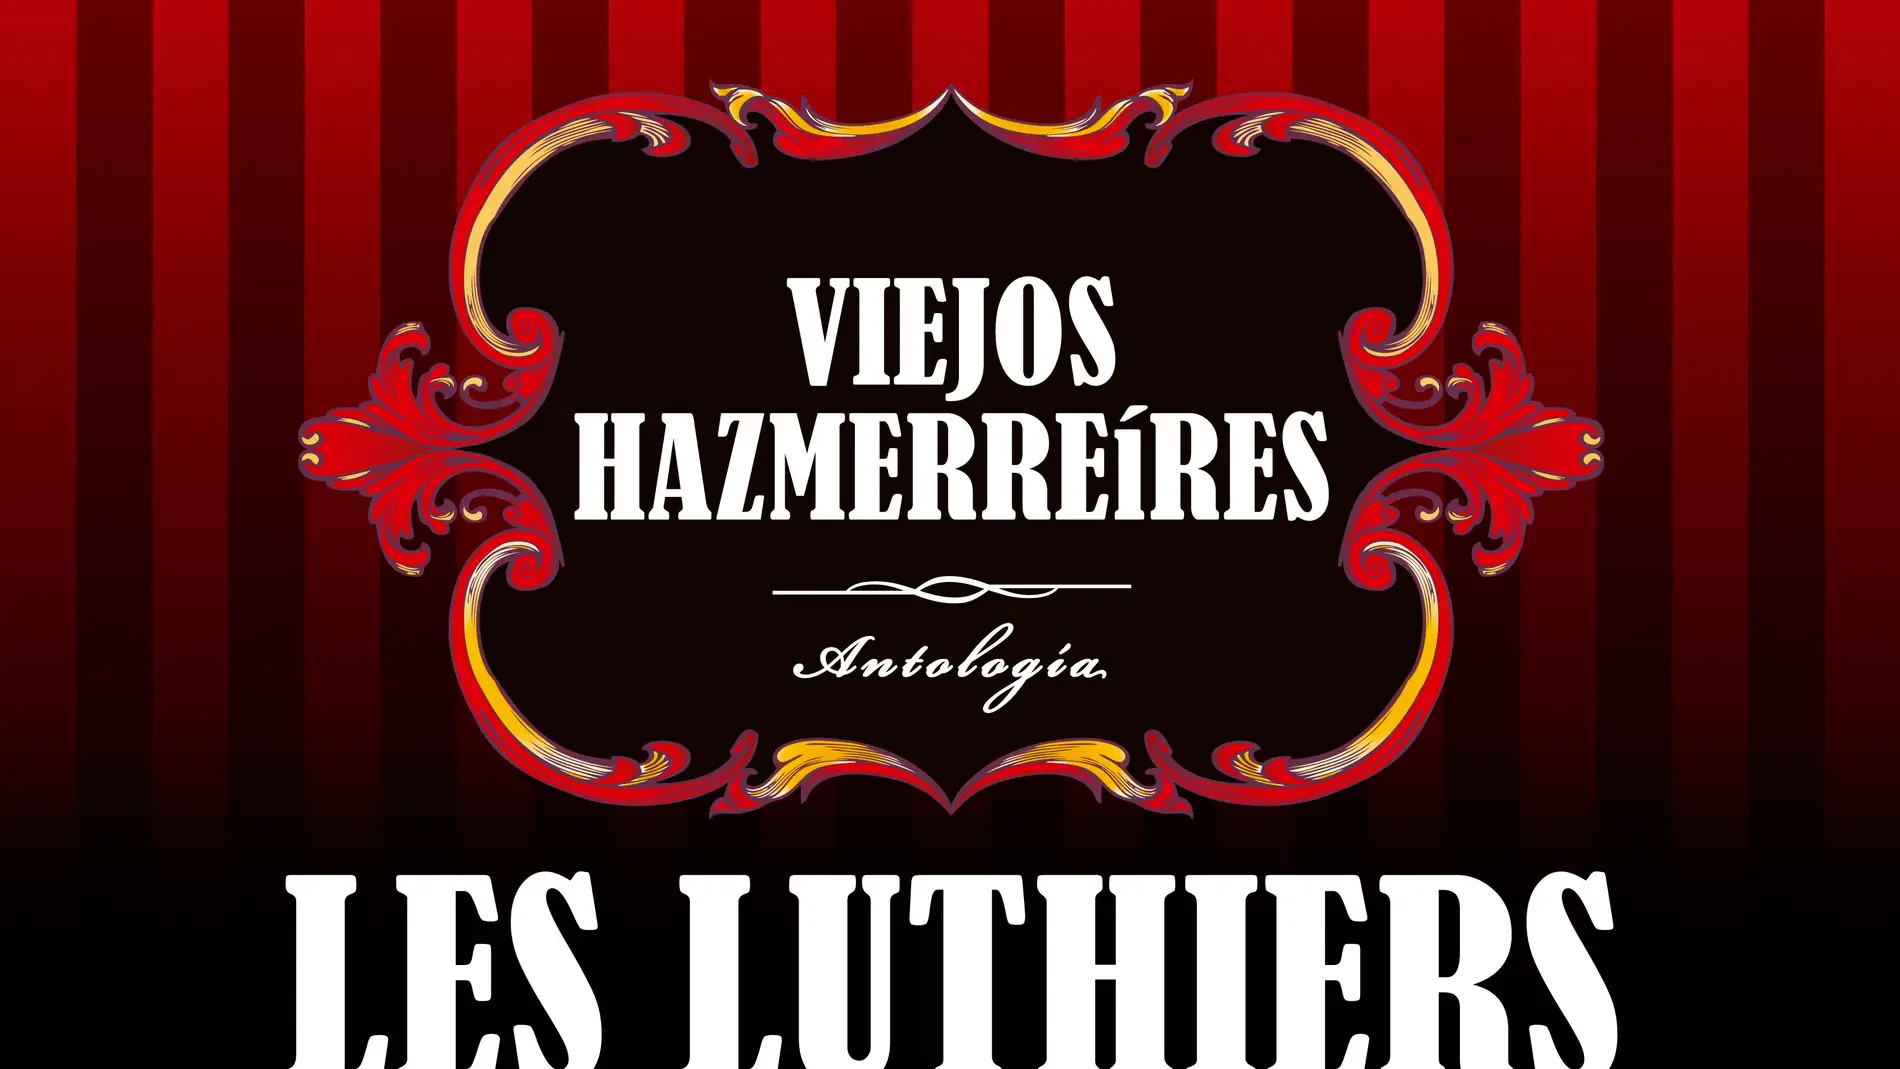 Les Luthiers regresan a Alicante